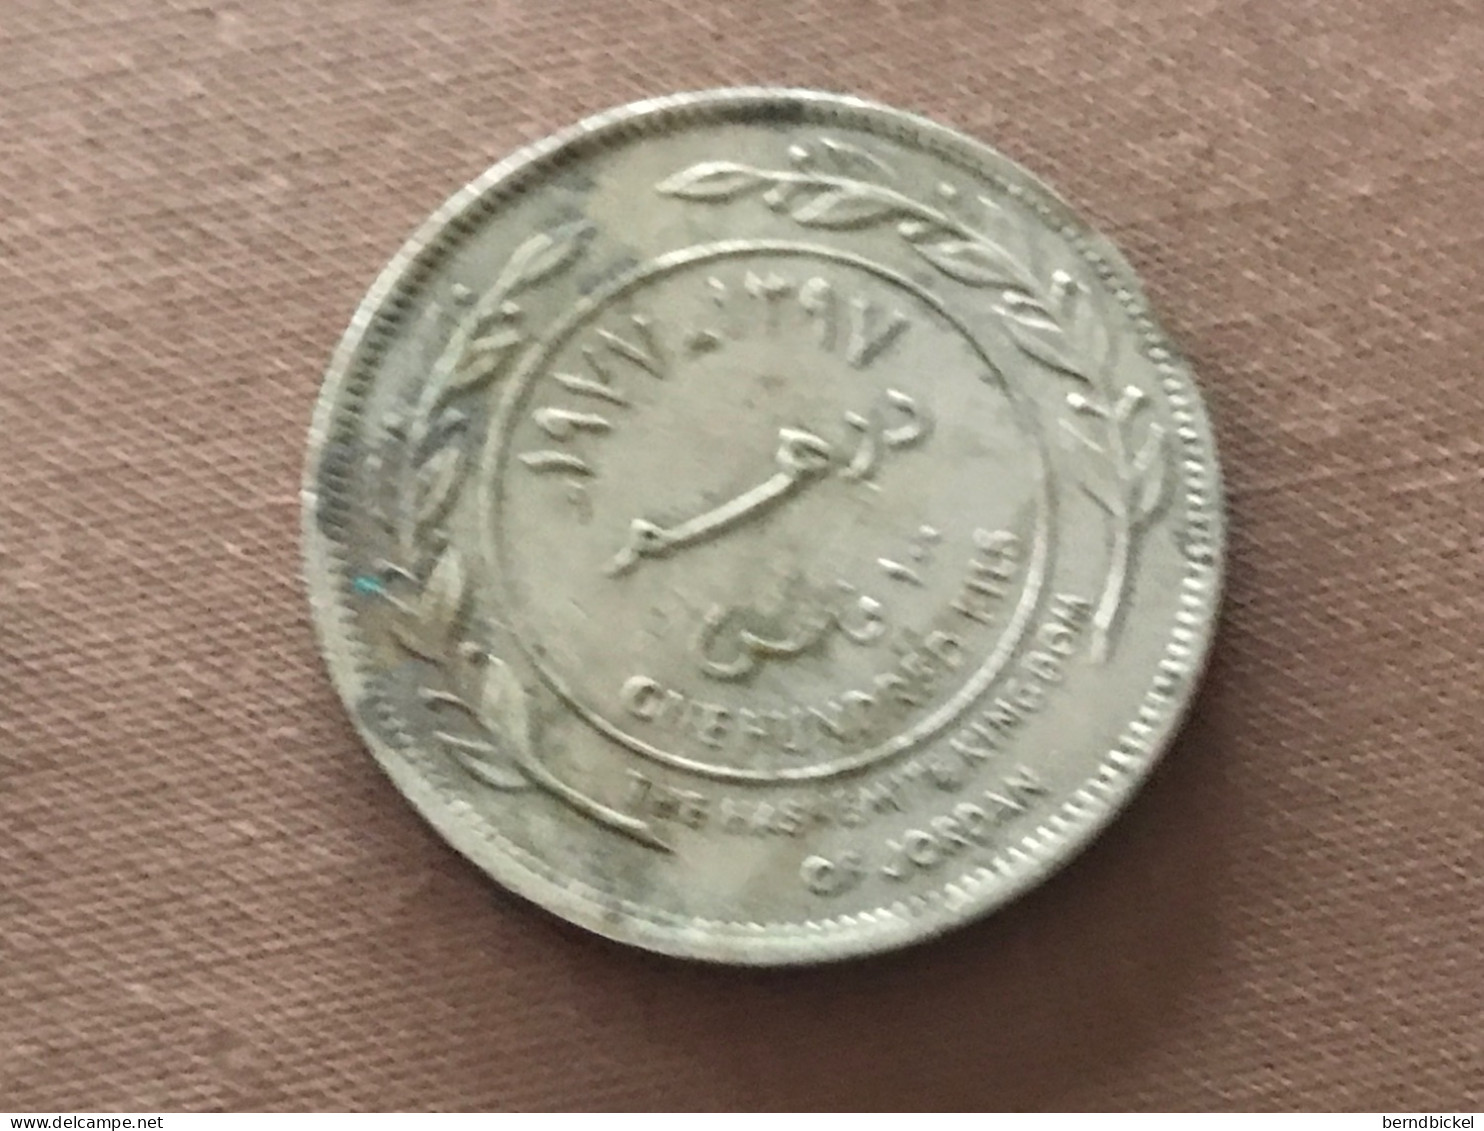 Münze Münzen Umlaufmünze Jordanien 100 Fils 1977 - Jordan